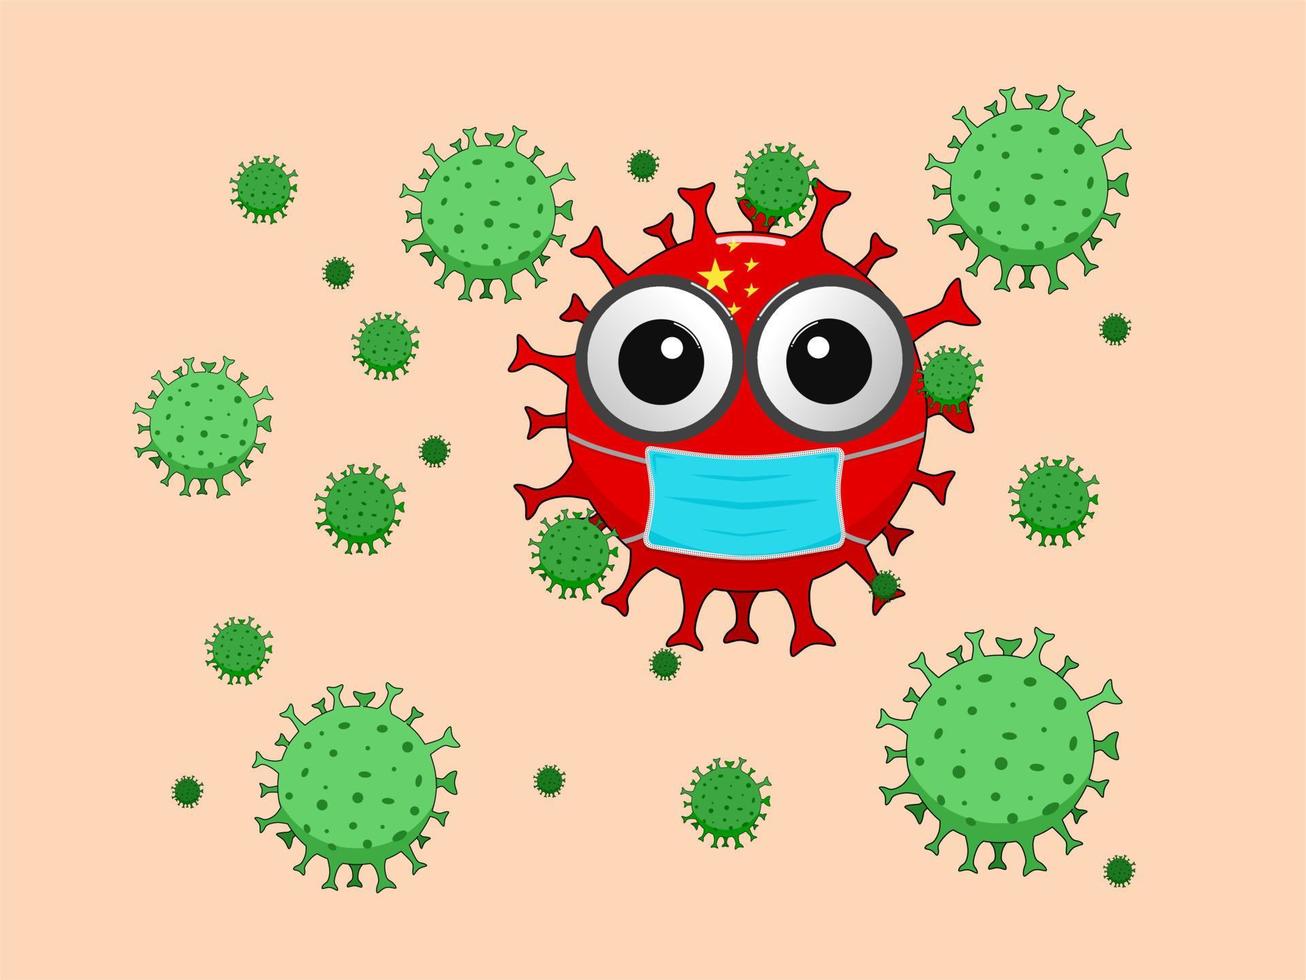 Corona-Virus-Illustration, ein bakterieller Charakter auf dem Hintergrund der chinesischen Flagge, die eine Maske trägt und von Corona-Virus-Bakterien umgeben ist vektor